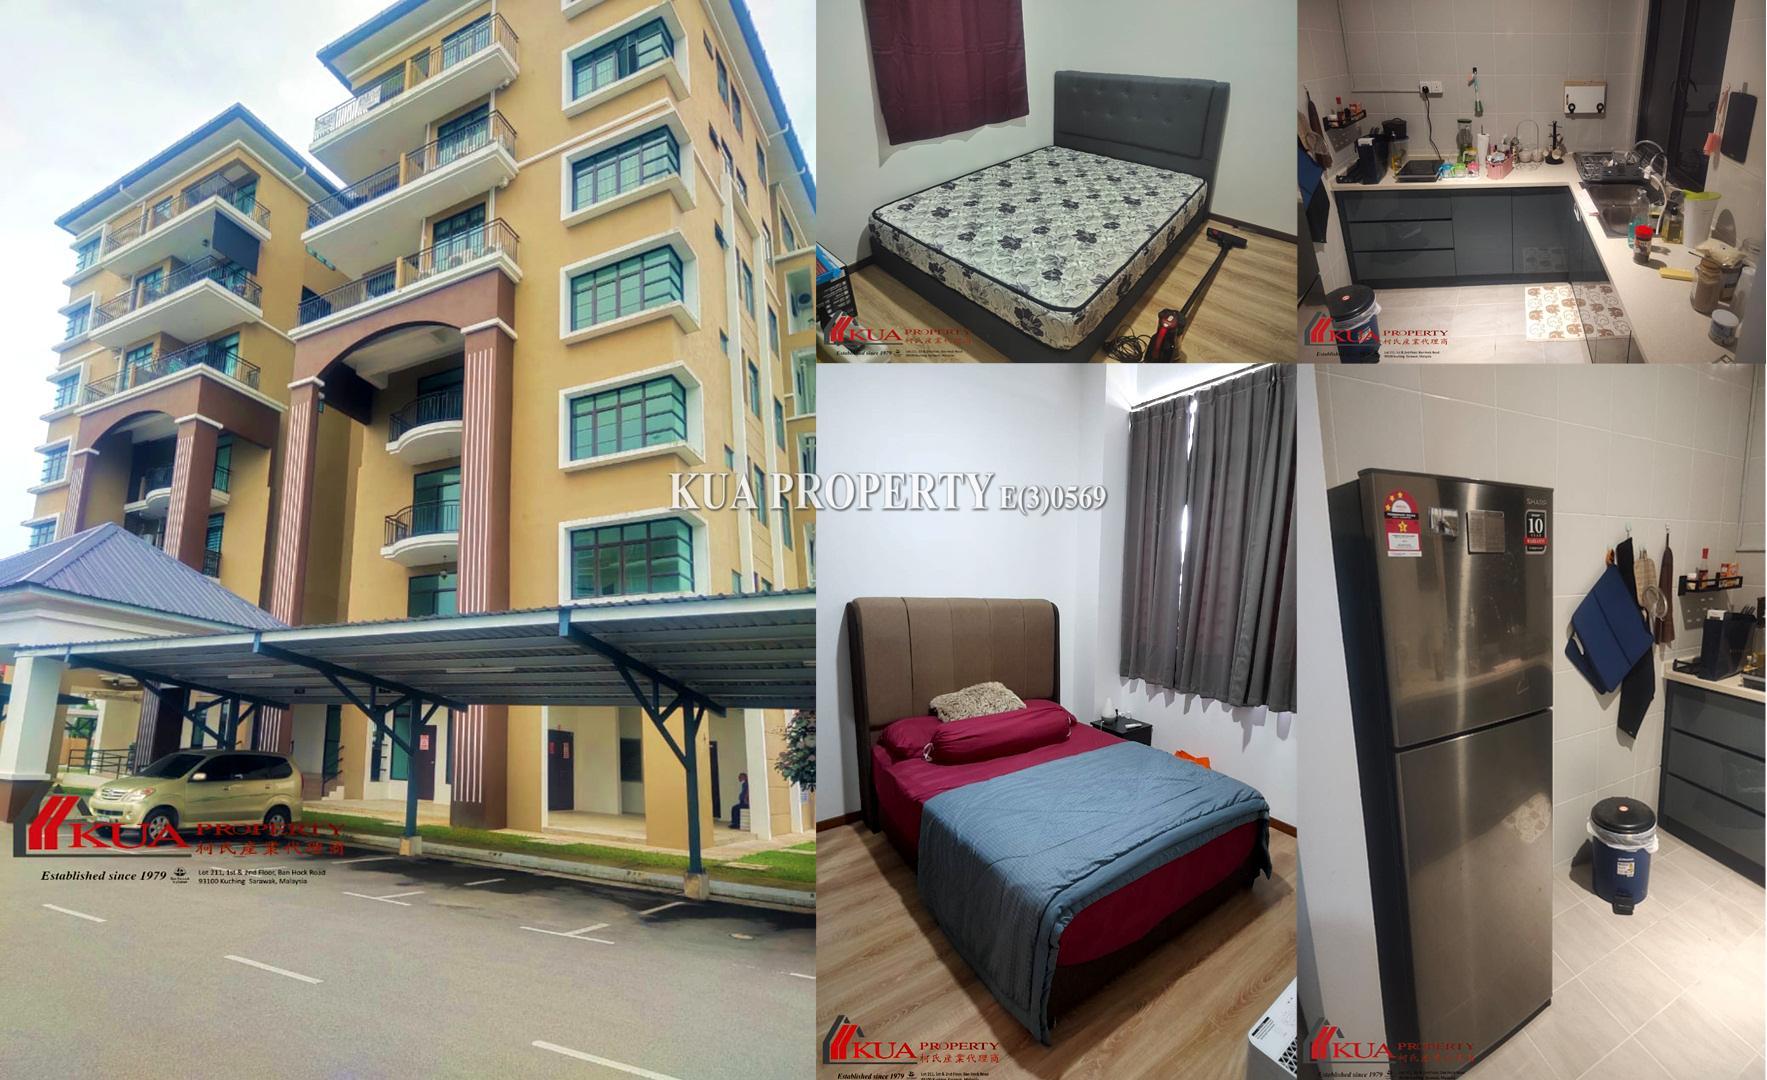 Stutong Tiarra Apartment For Rent! Stutong, Kuching